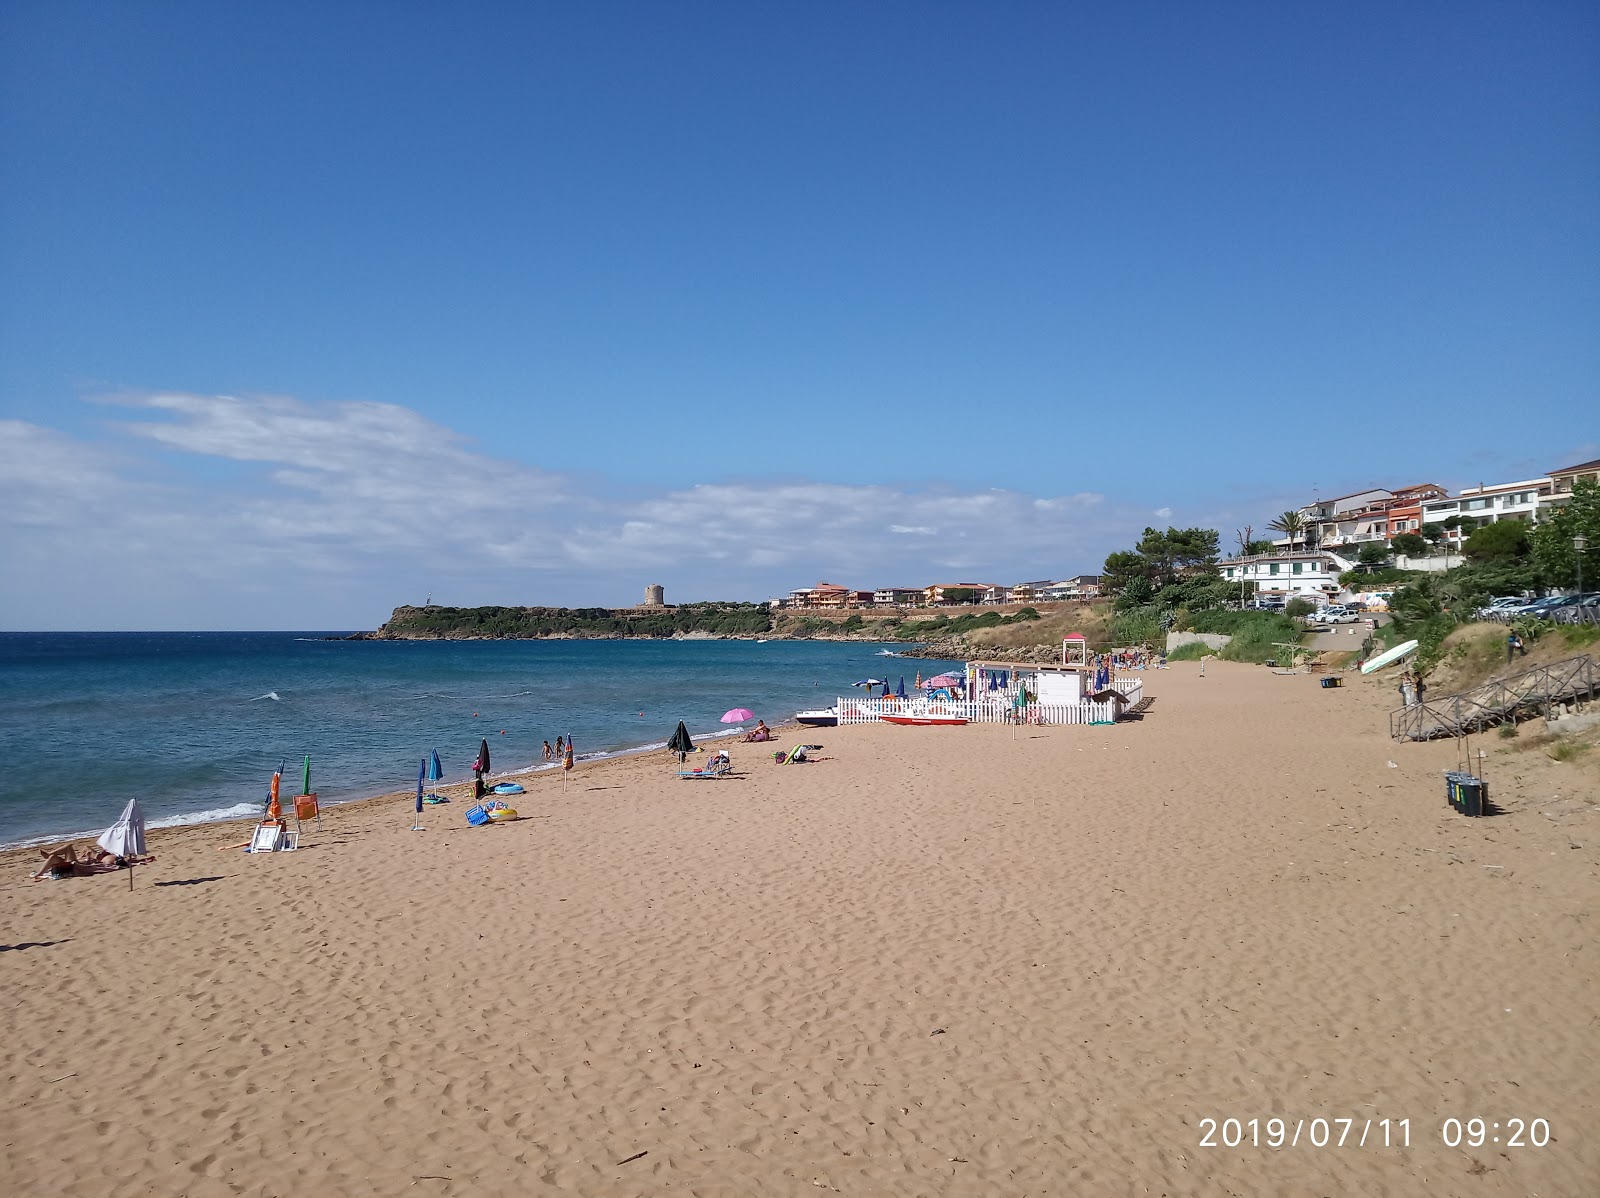 Foto de Spiaggia Rossa con muy limpio nivel de limpieza